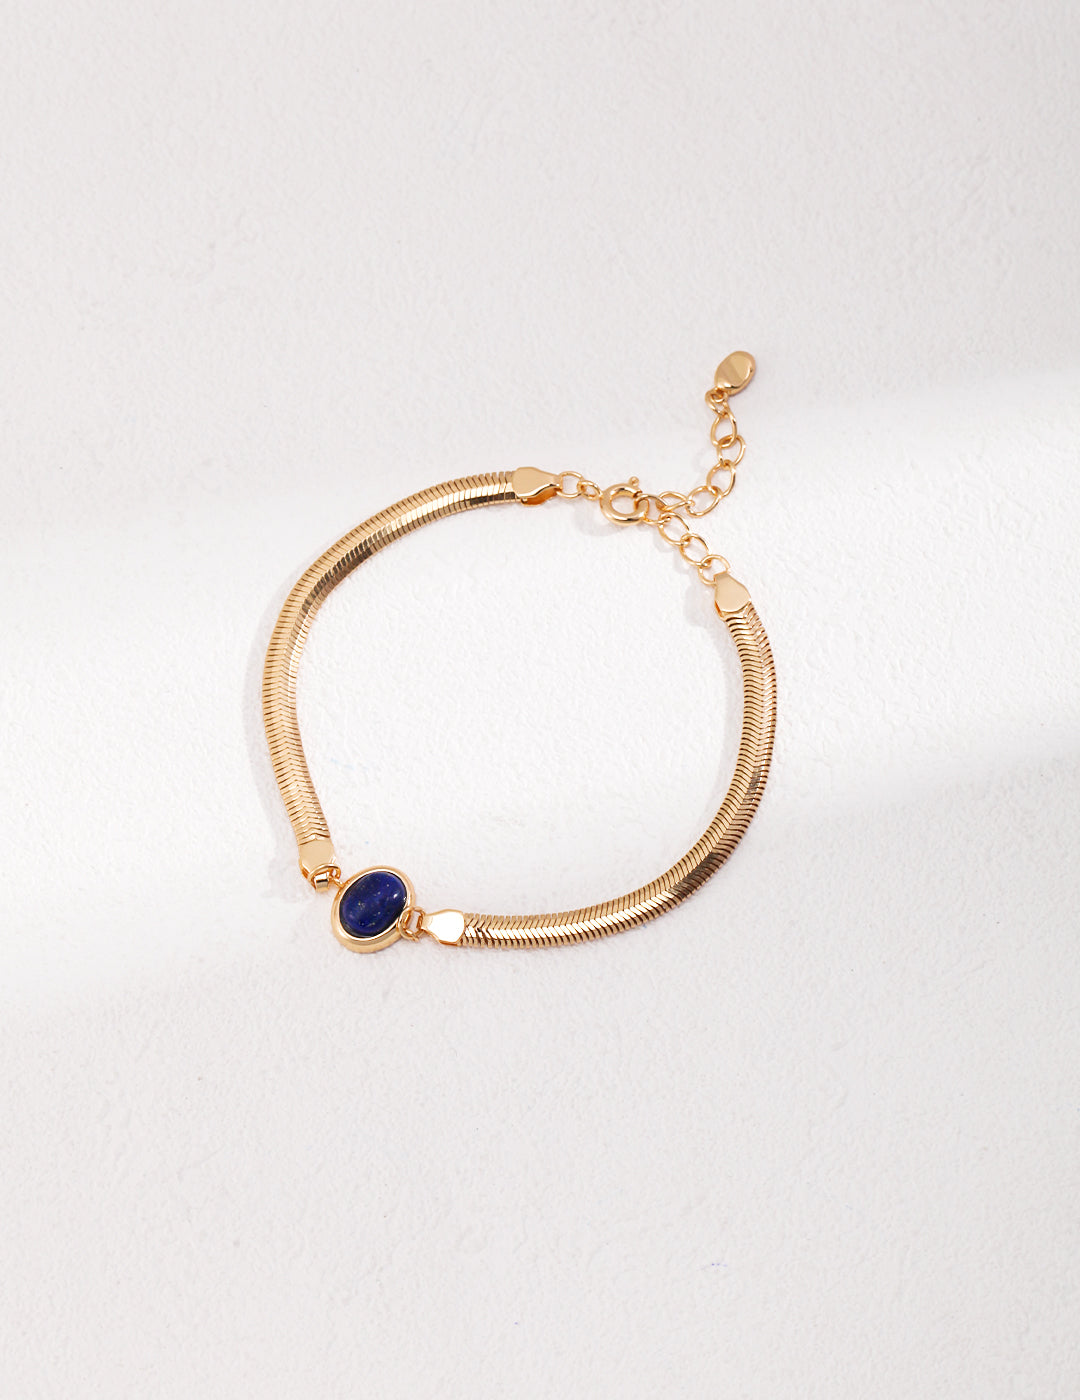 Natural Lapis Lazuli/Tiger Eye Bracelet